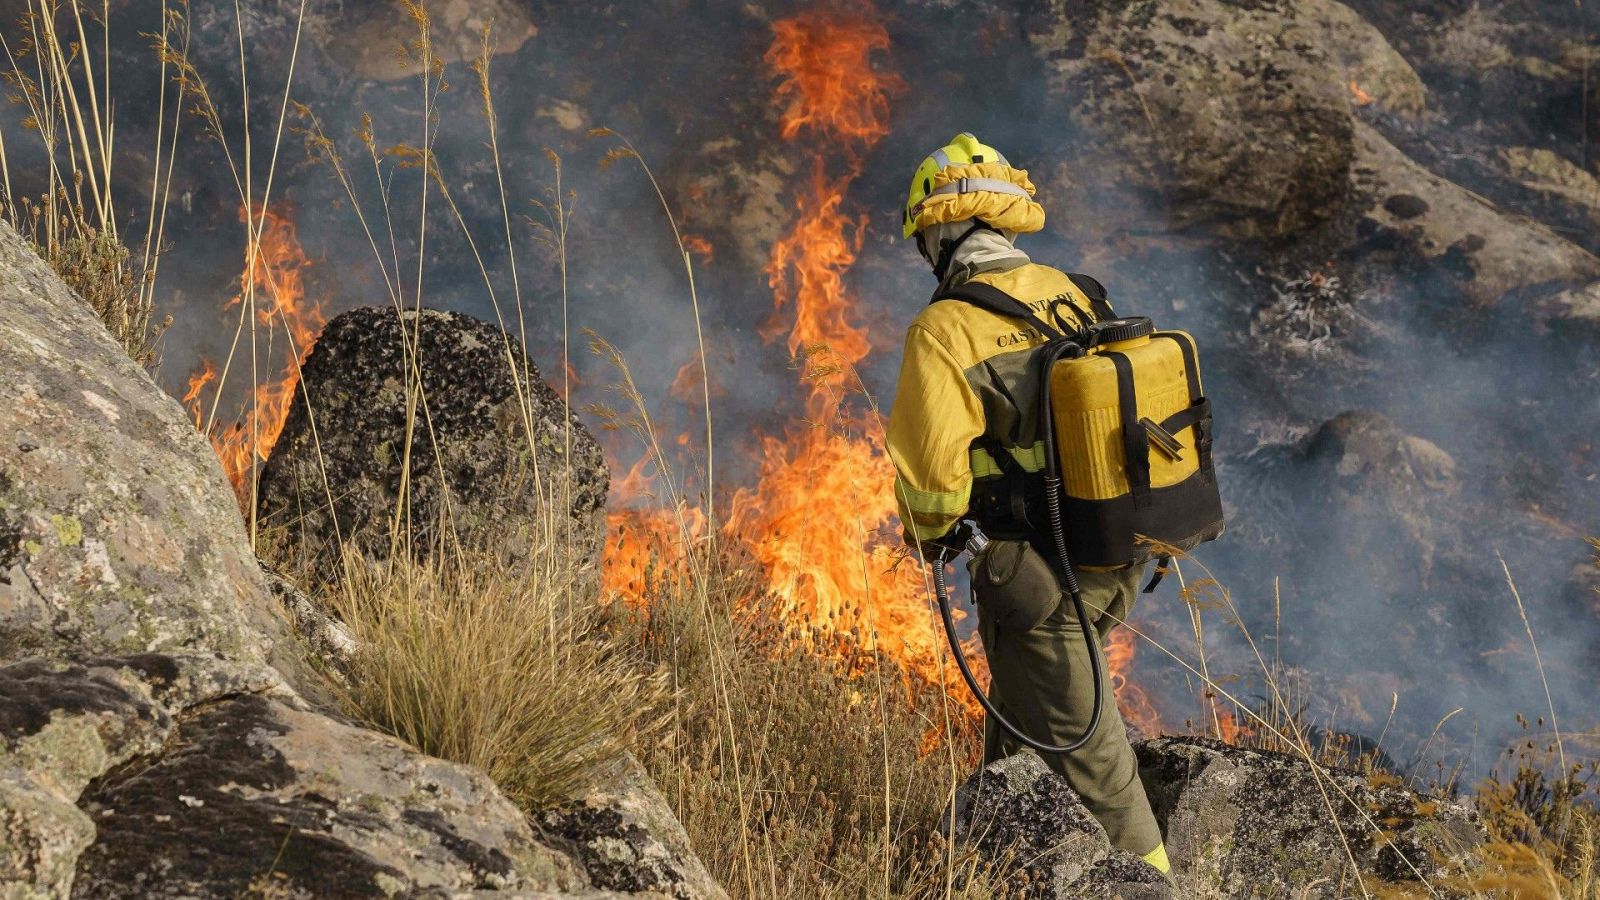 El incendio lleva 1000 hectáreas calcinadas, la complicada orografía dificulta su extinción - Ver ahora